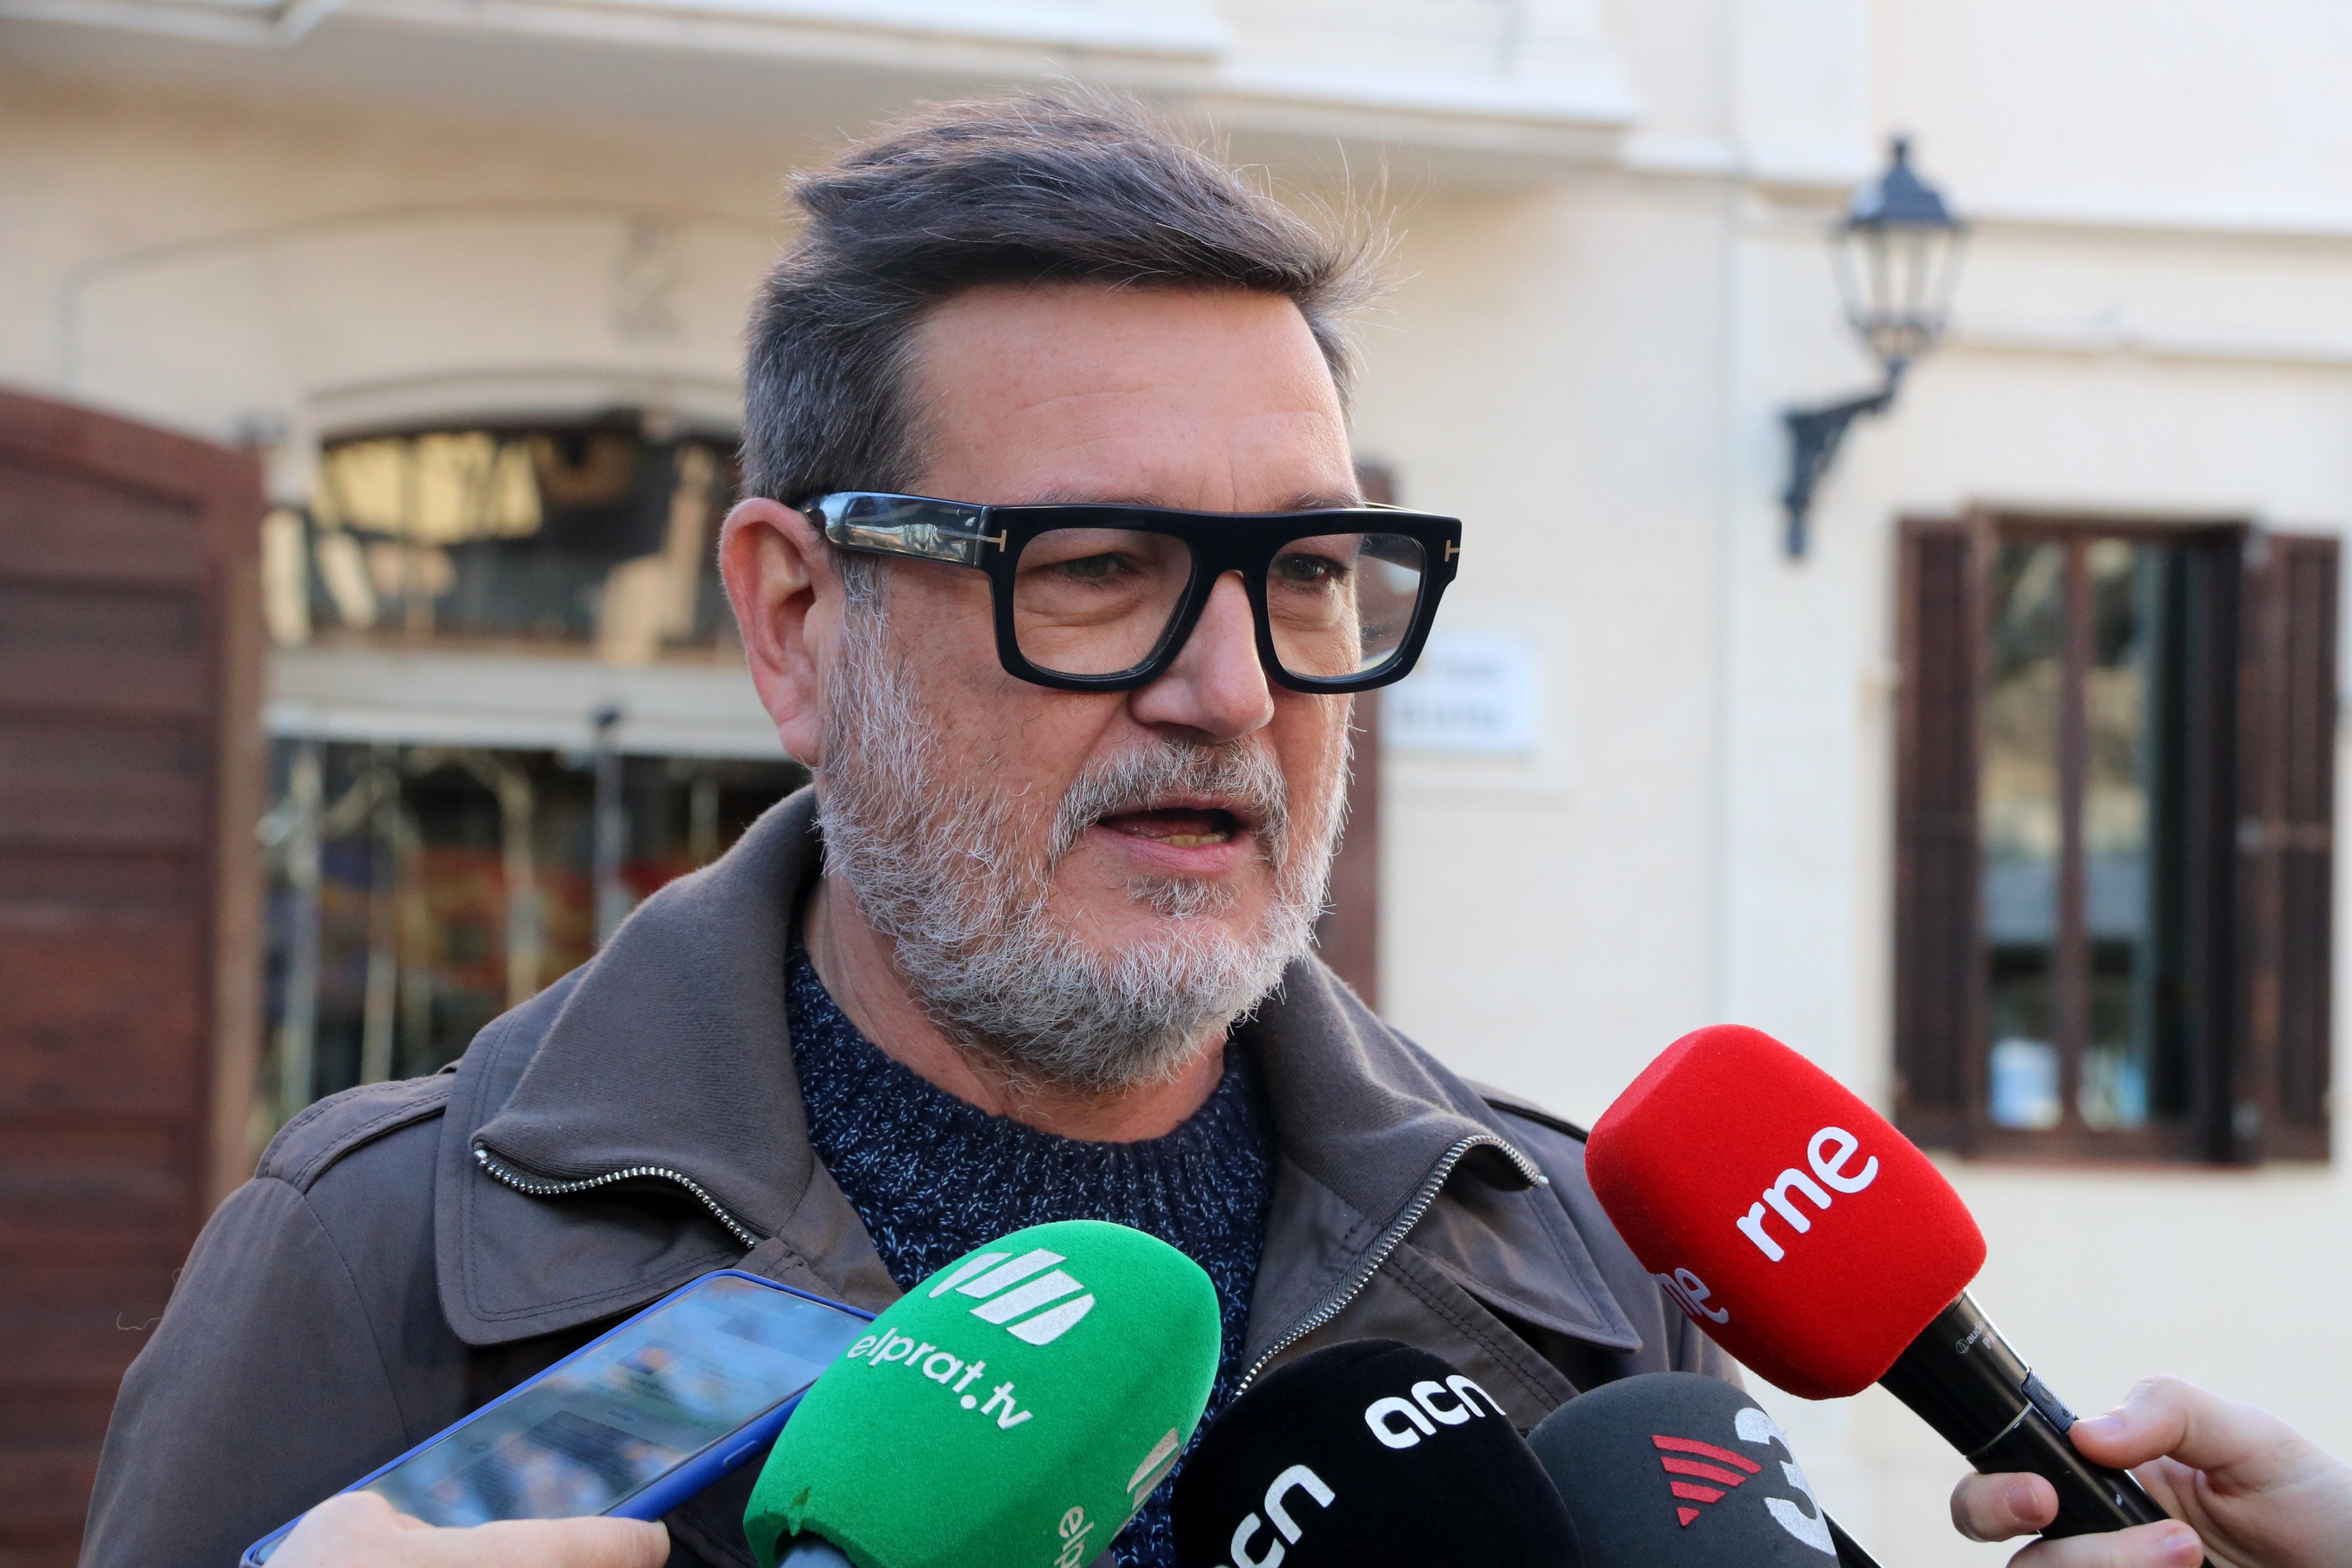 El alcalde del Prat celebra los presupuestos: "La ampliación depredadora del aeropuerto no se hará"